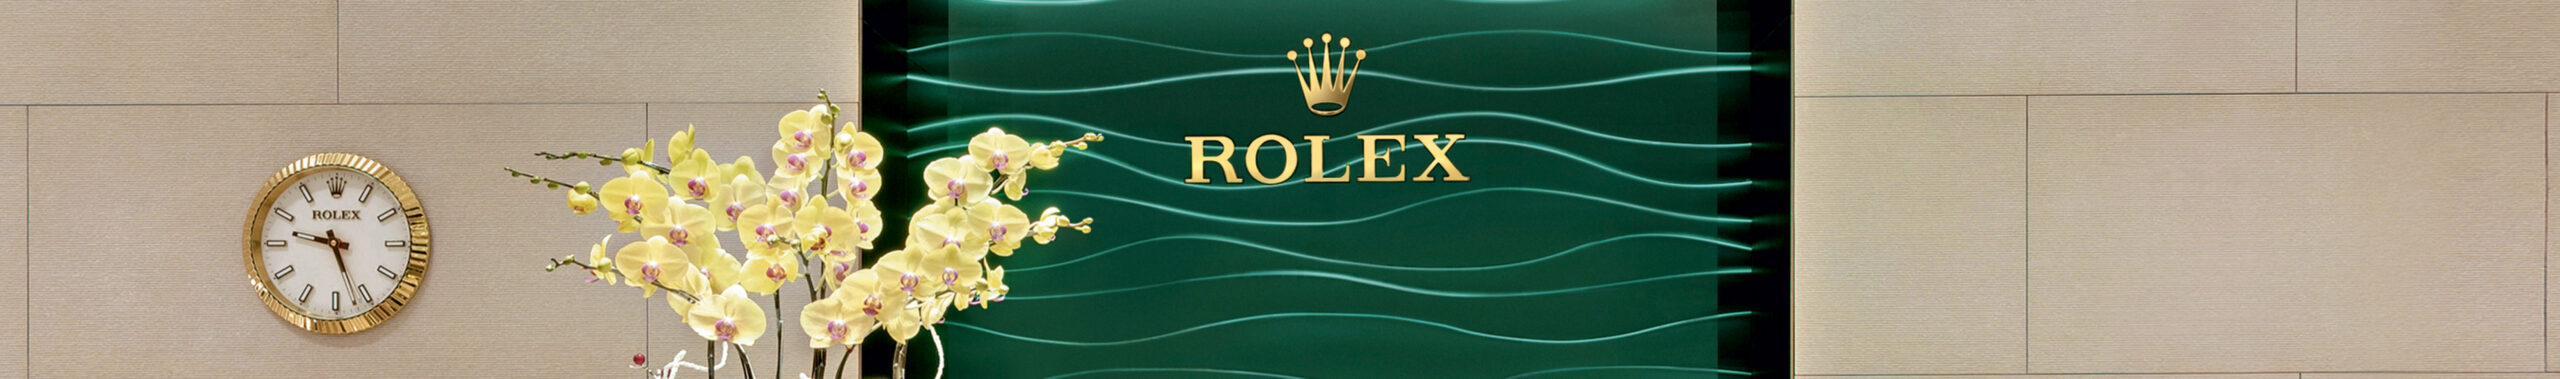 Official Rolex Jeweler in Laguna Beach | Fredric H. Rubel Jewelers